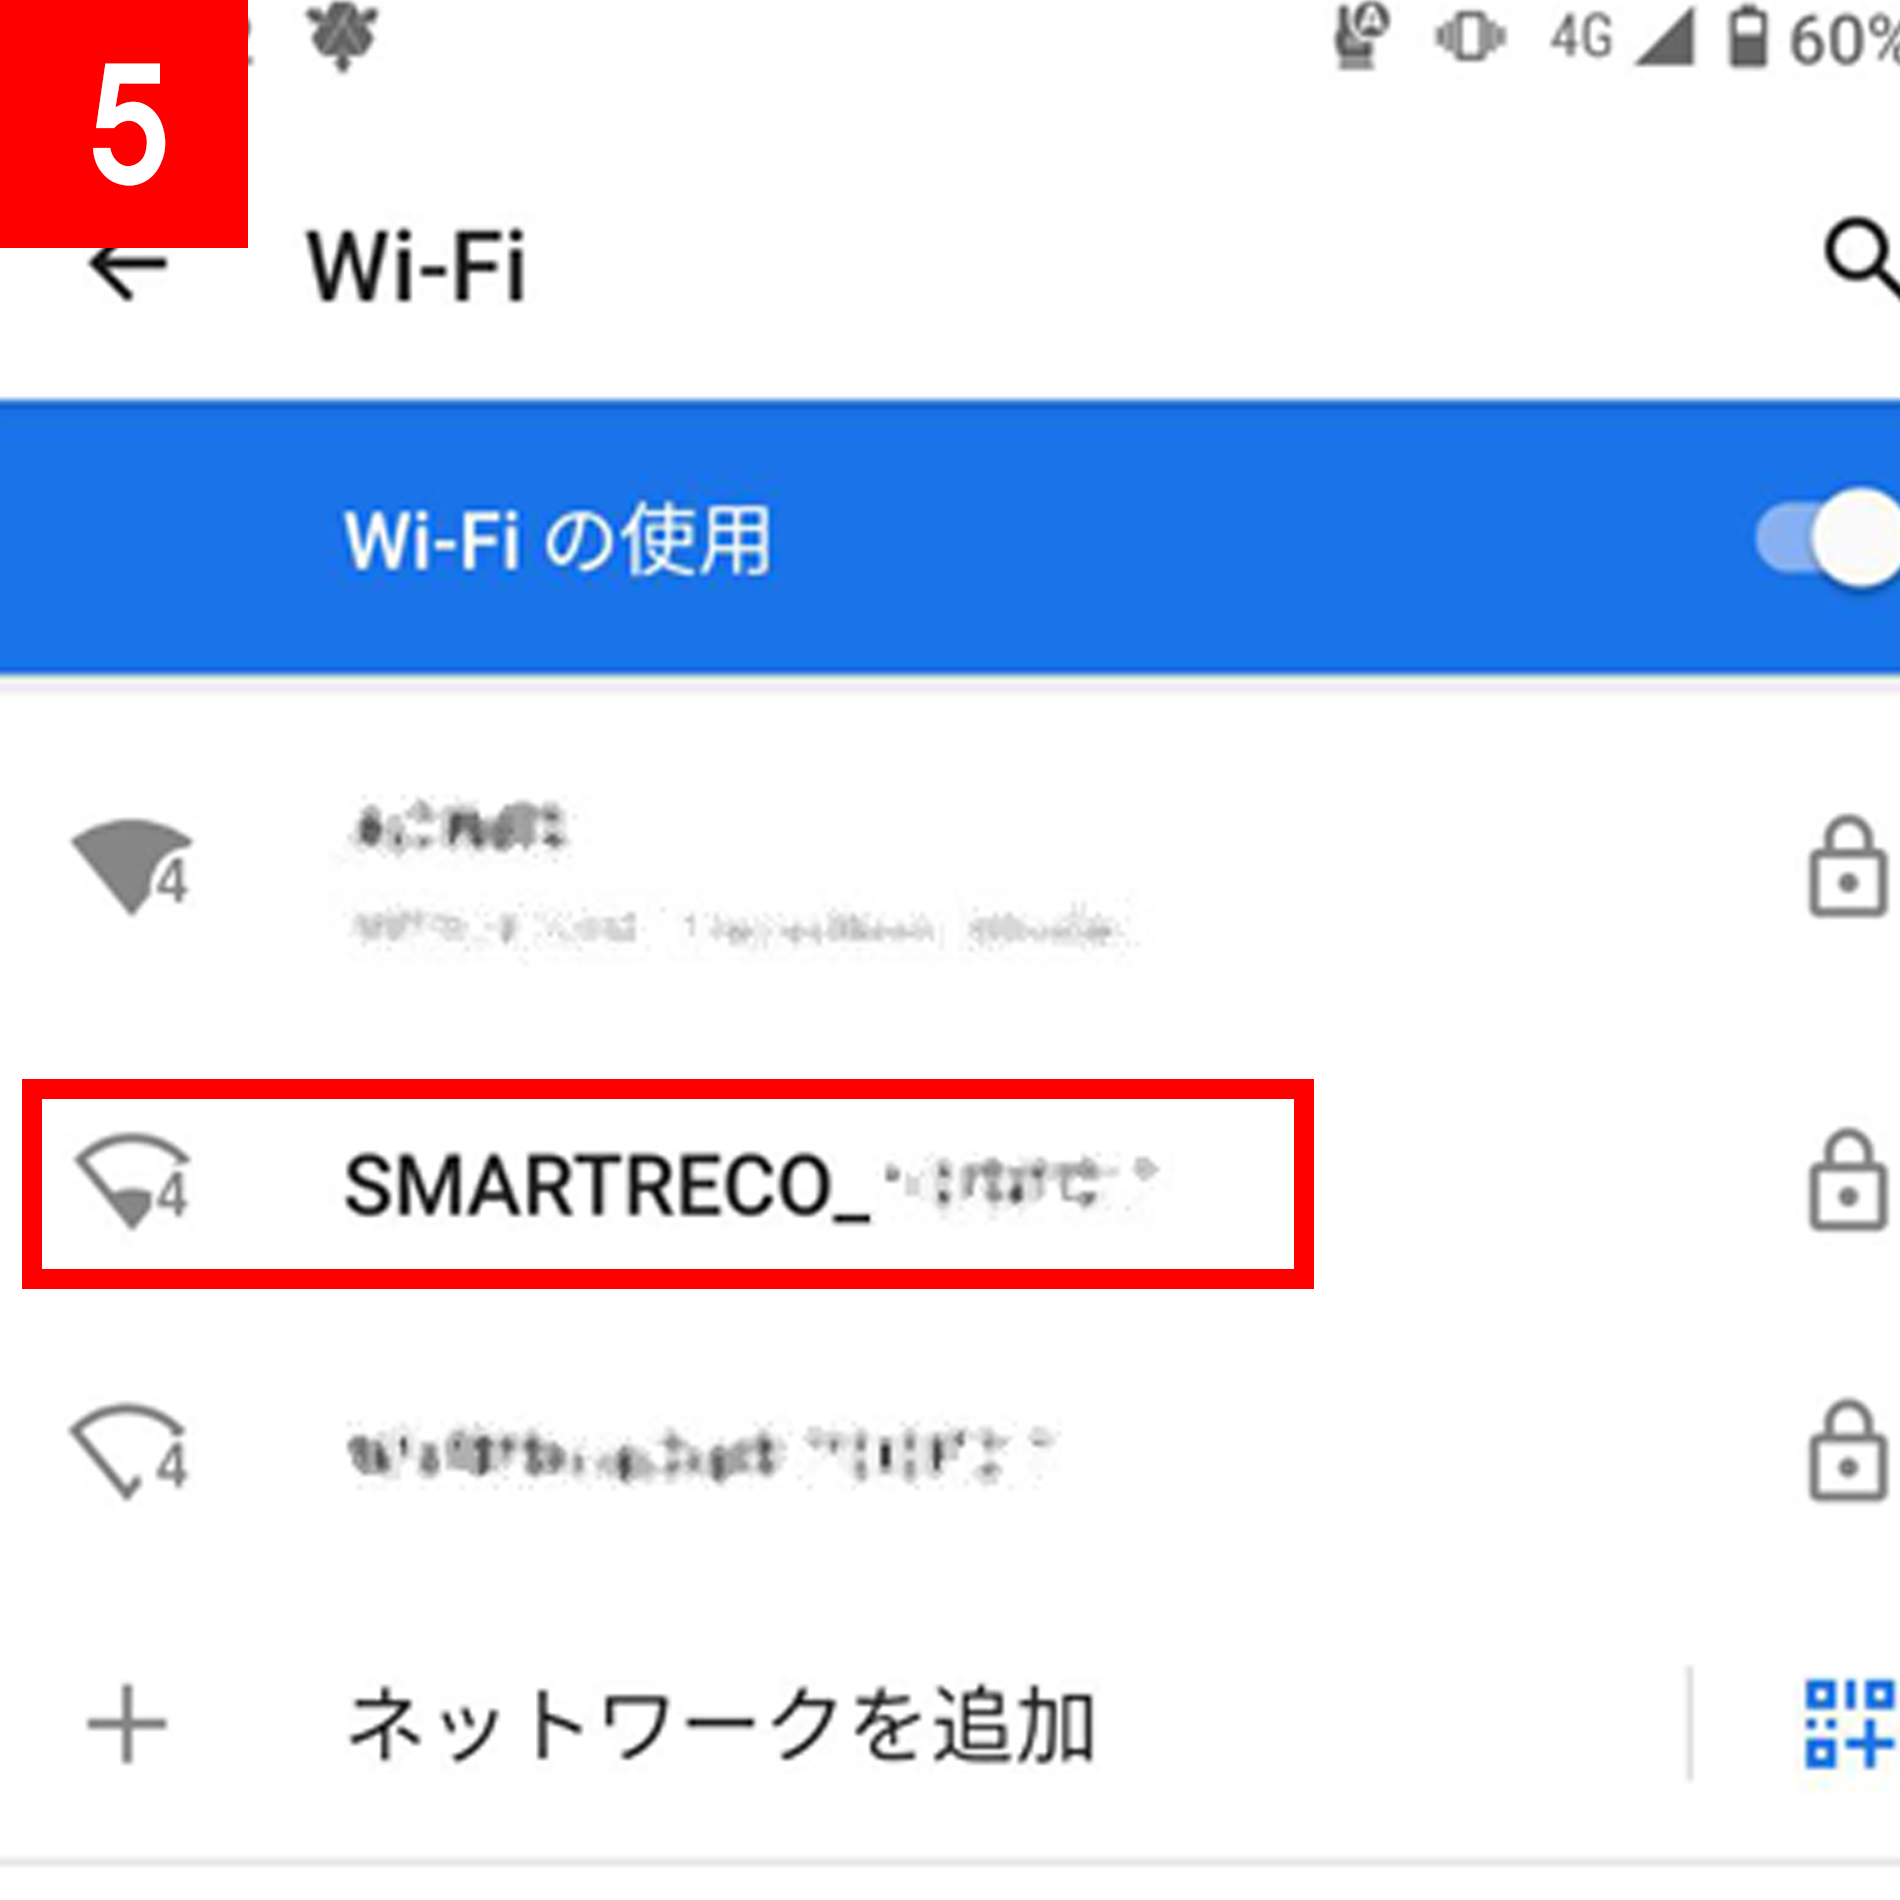 スマートフォンのWi-Fi設定画面に表示されるSSID「SMARTRECO_XXXXXX」をタップして、パスワードを入力することで、スマートレコと接続できます。